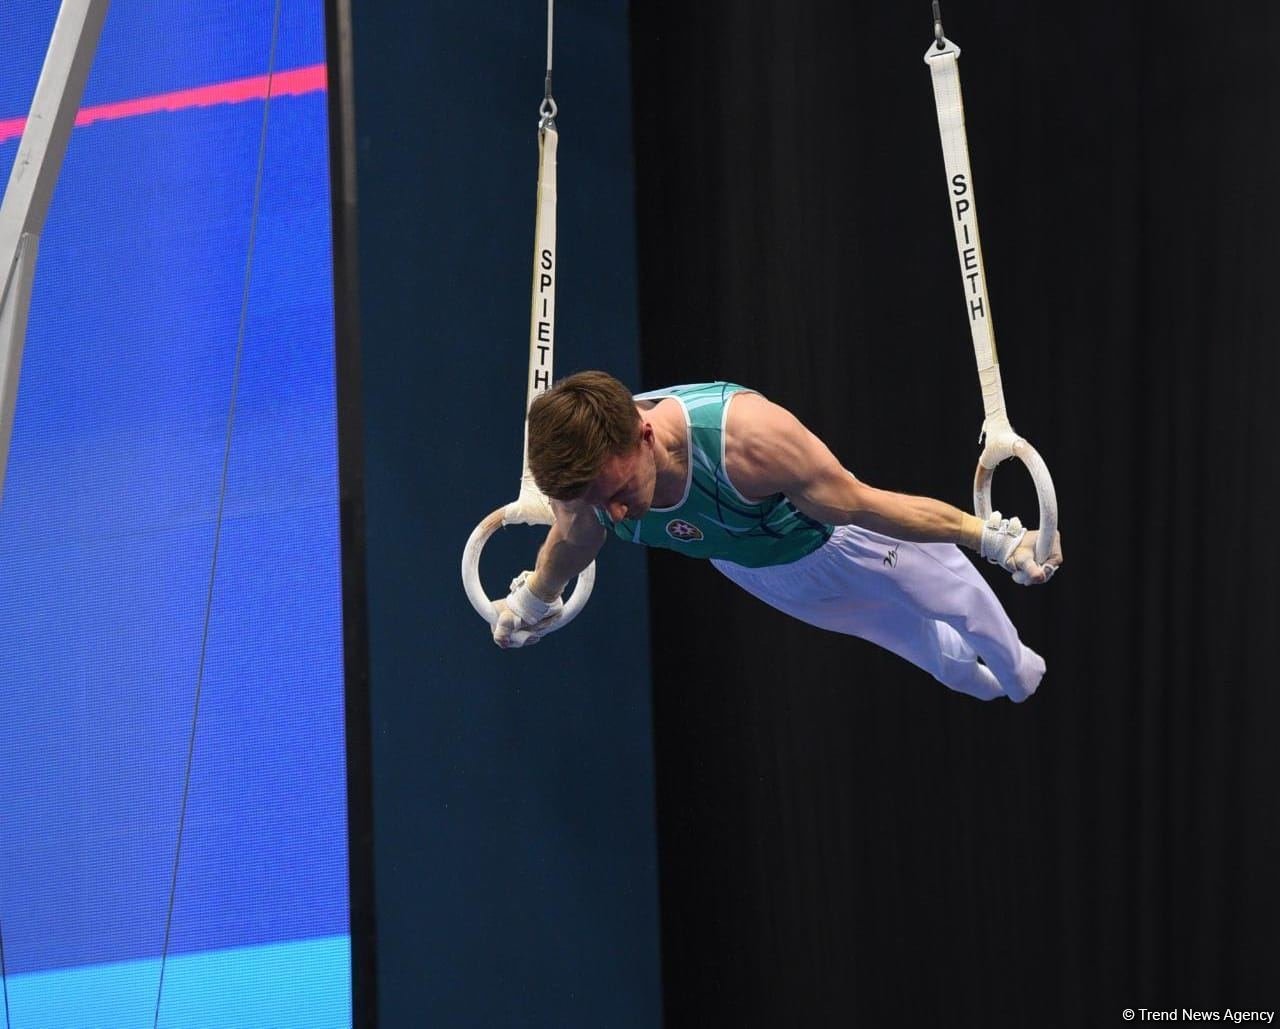 Azerbaijani athlete reaches final of European Artistic Gymnastics Championship